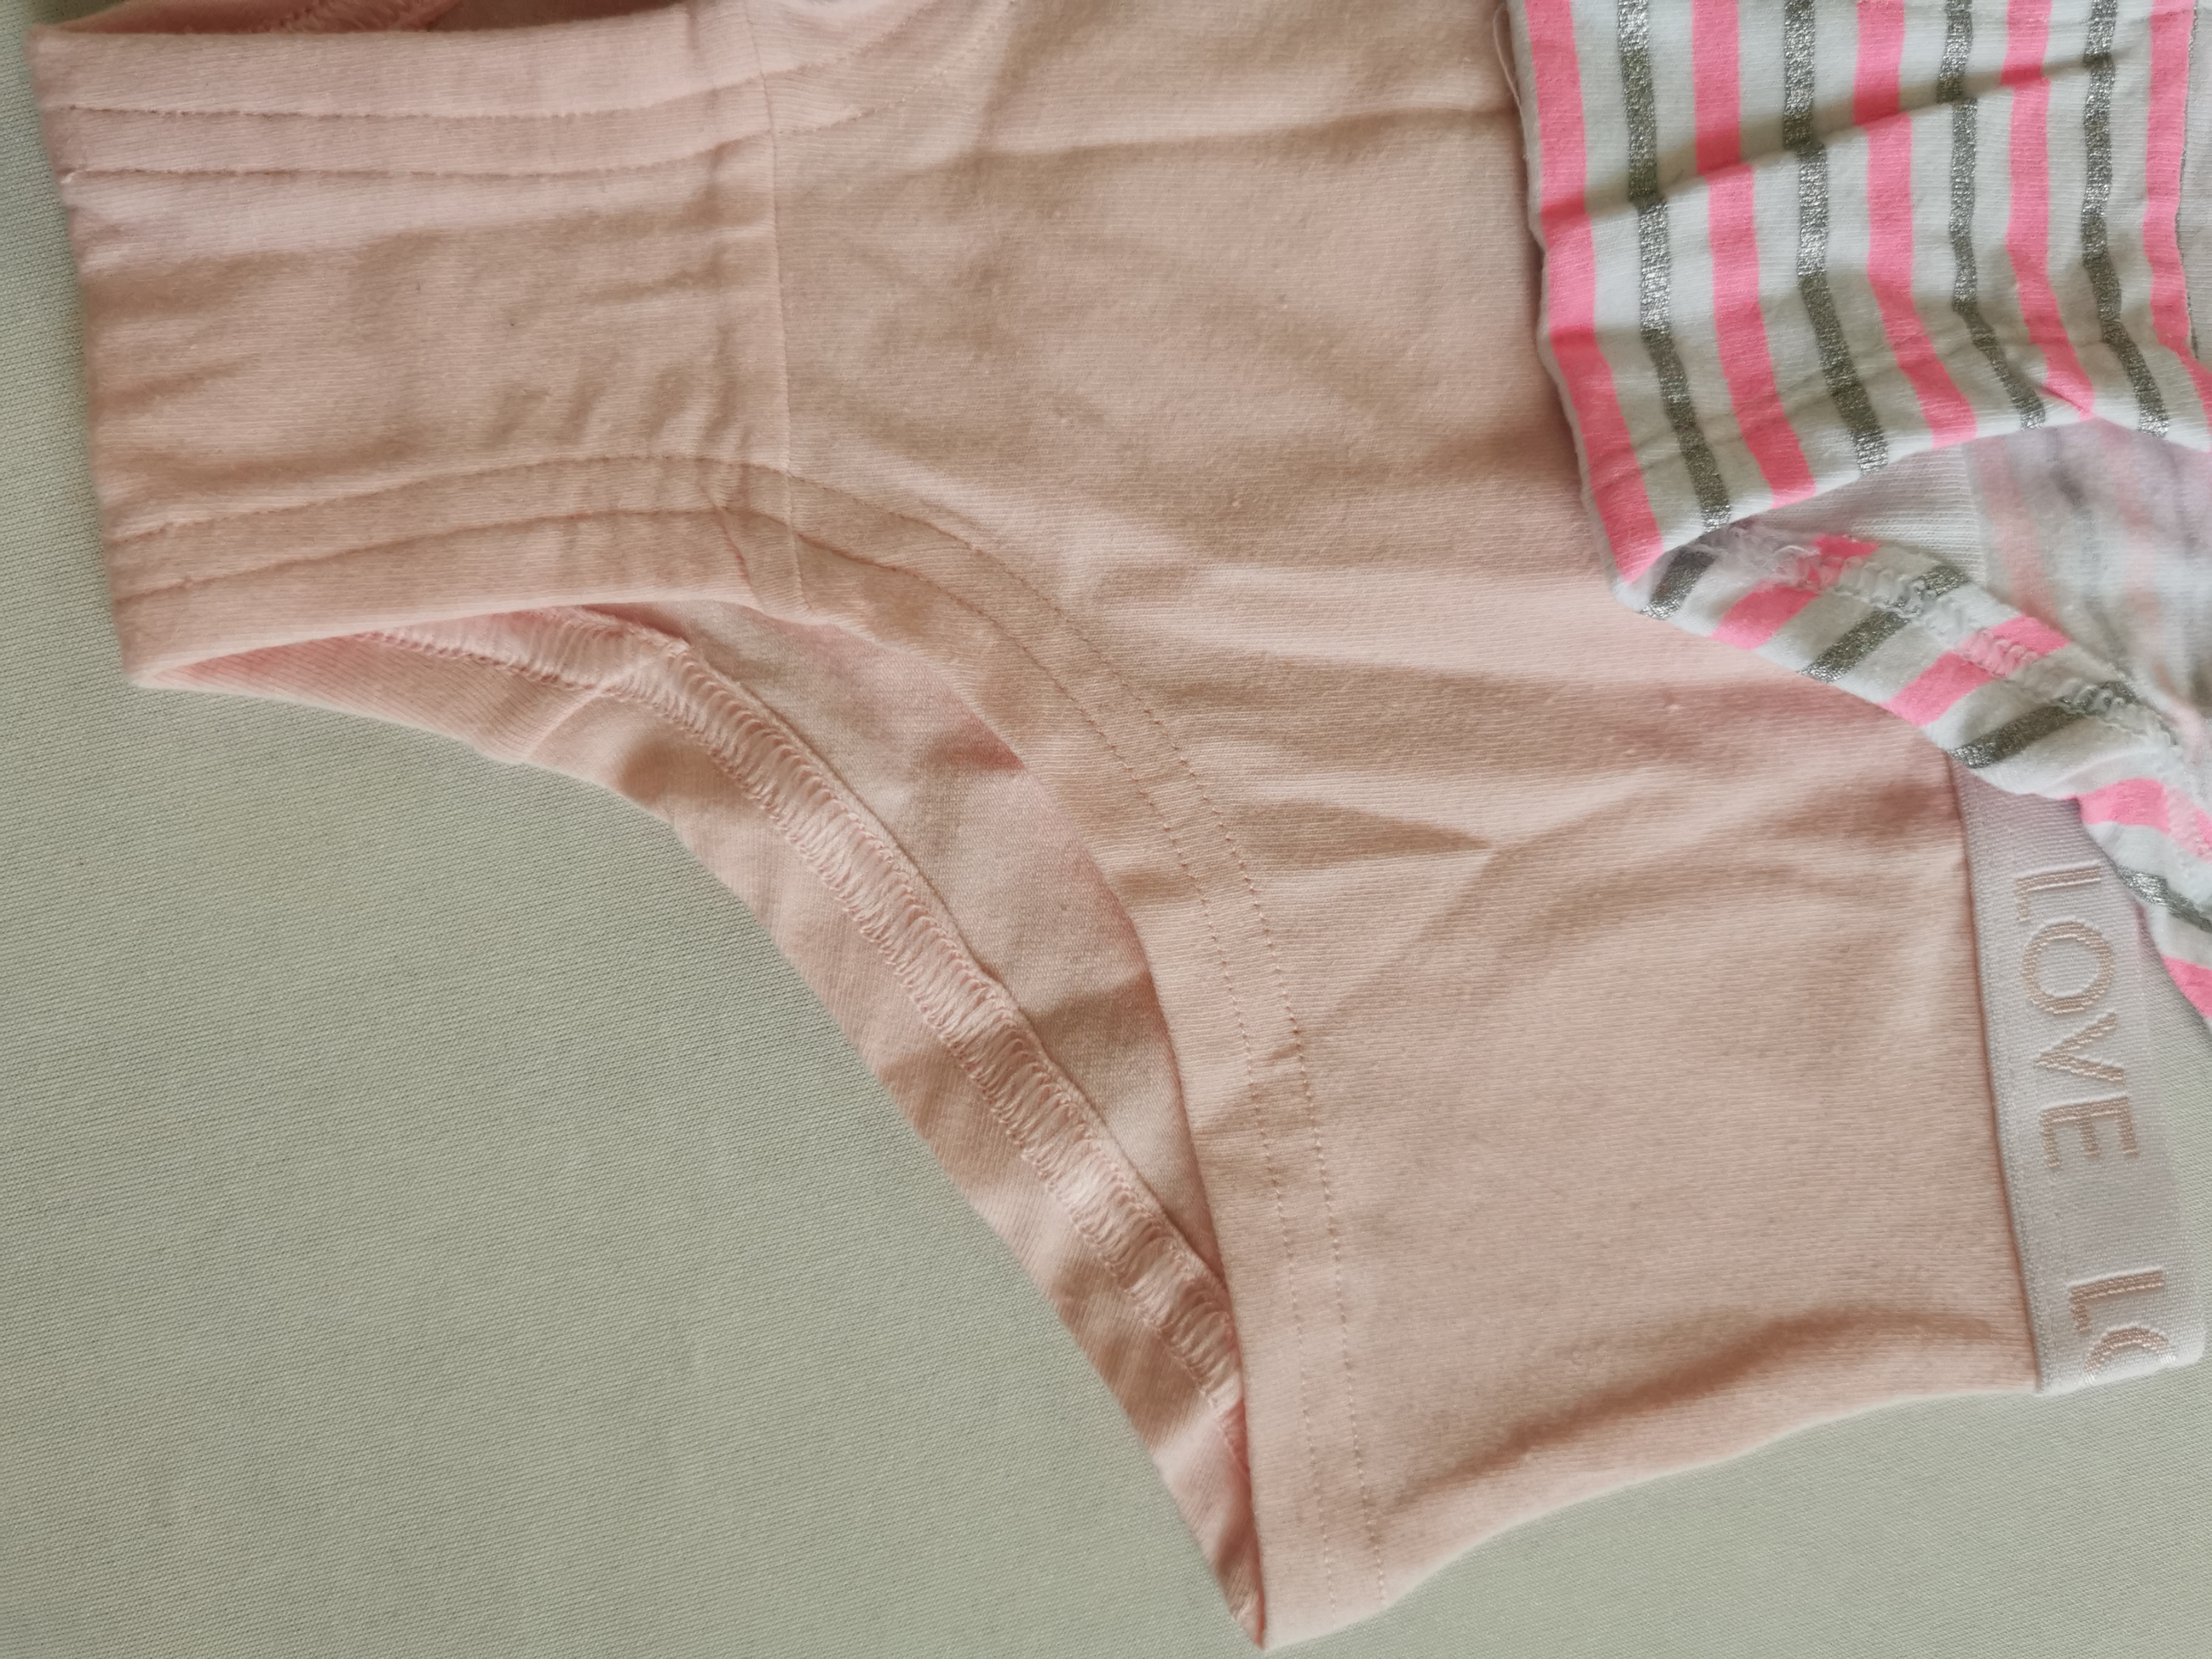 Ladies' brief women's panties bikini cotton spandex printed solid hot selling 